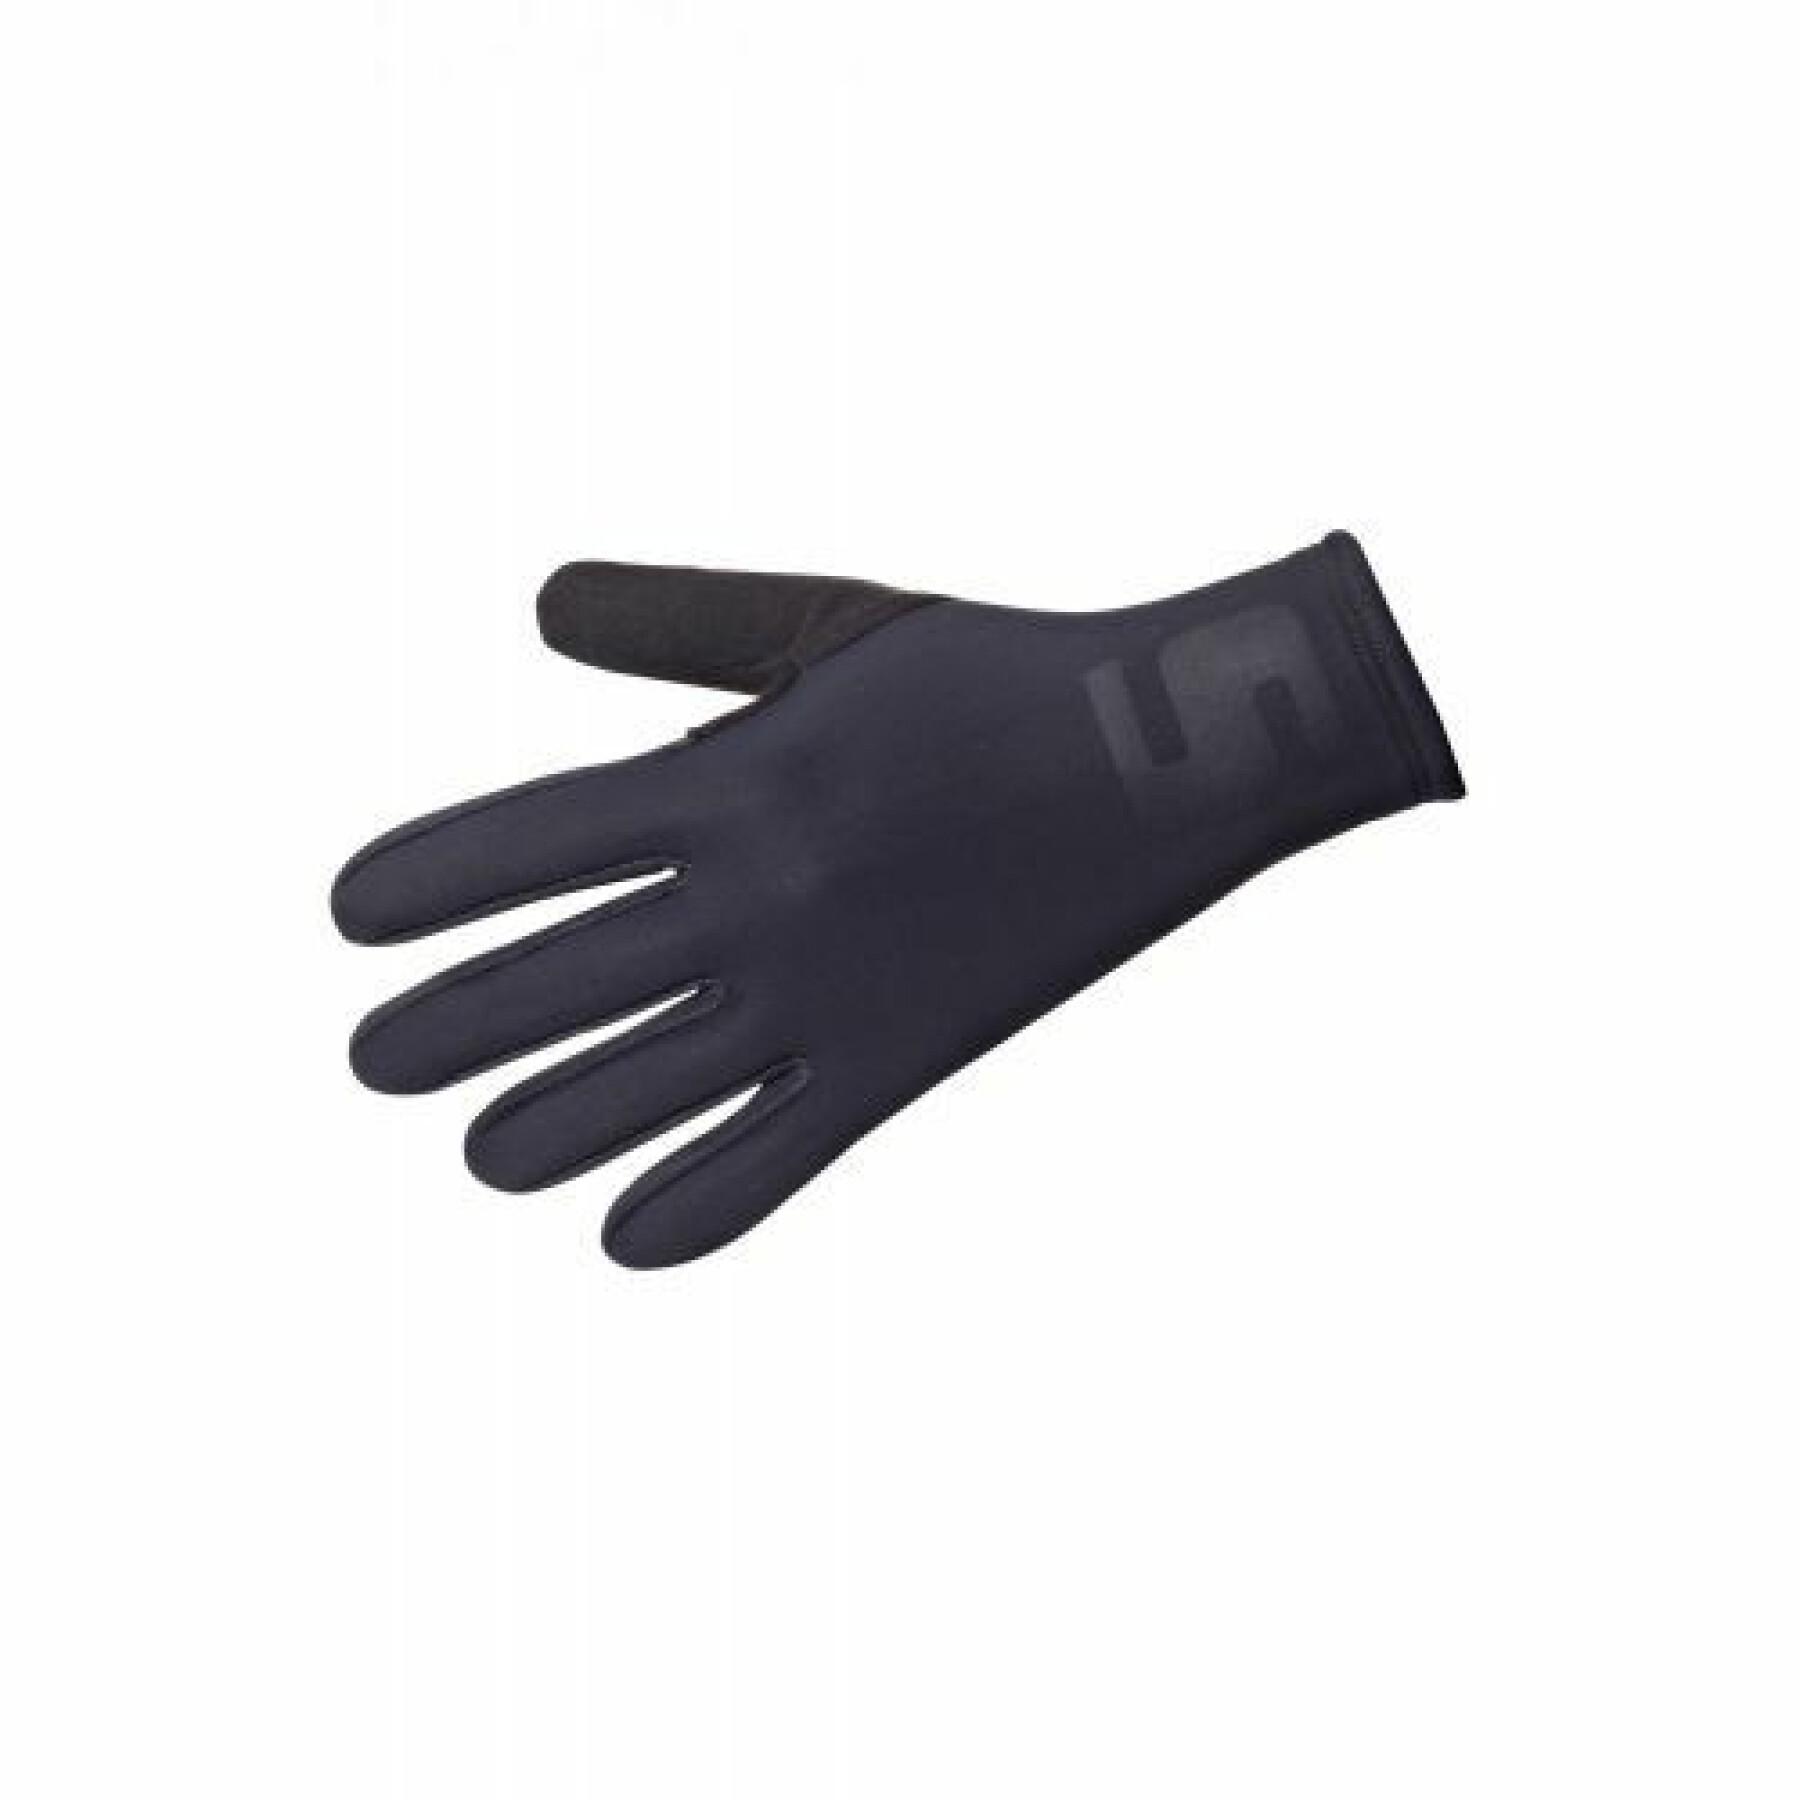 Waterproof winter gloves Sixs